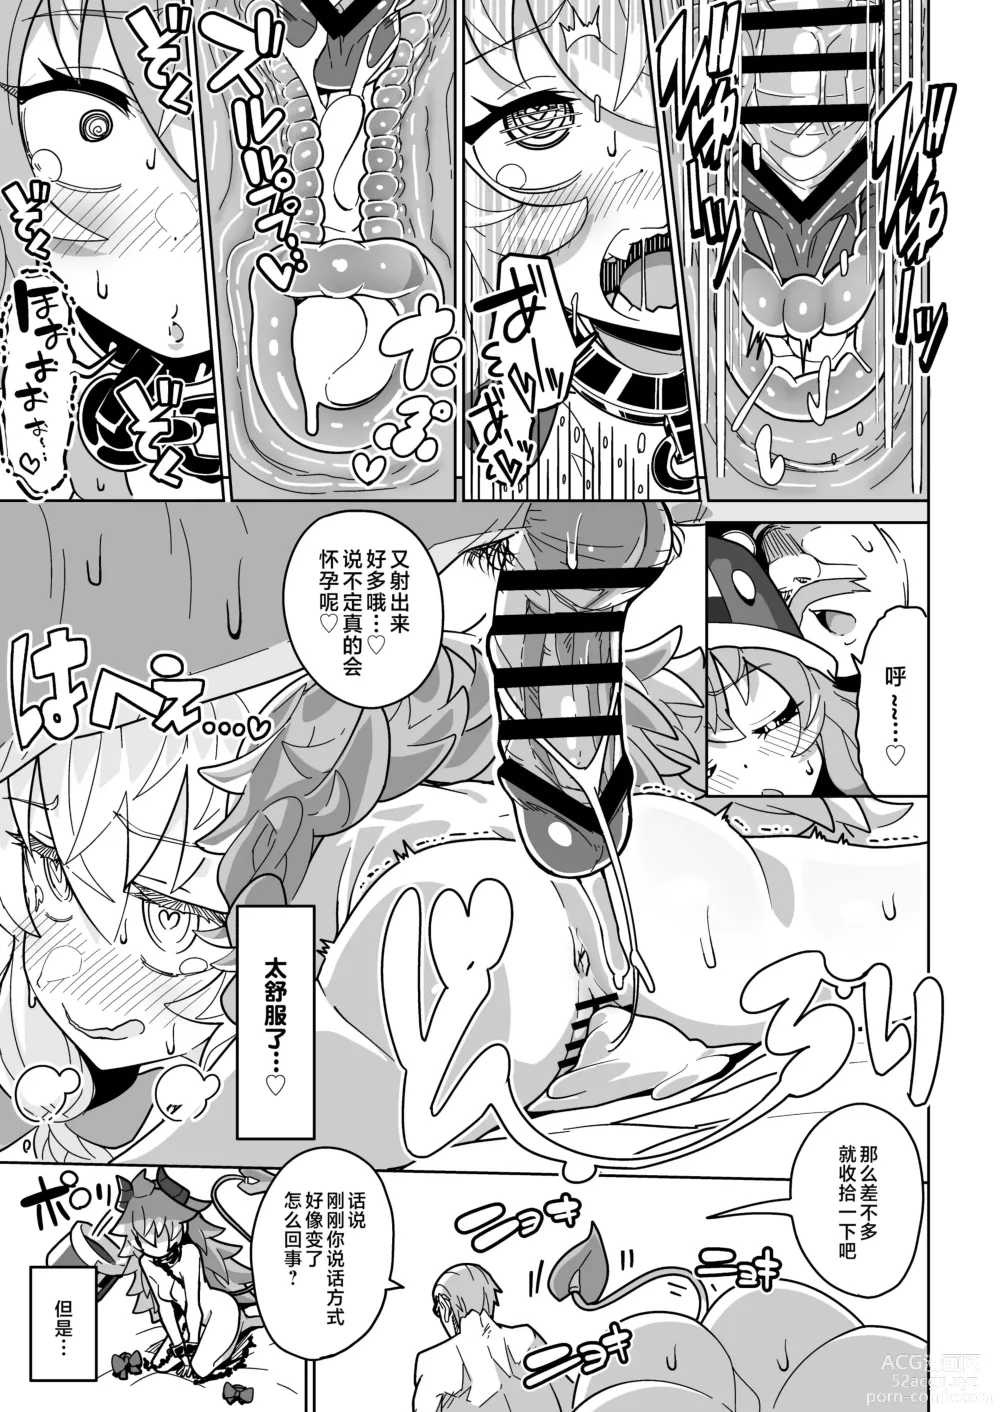 Page 56 of doujinshi Ningendomo Wa Tenohira no Ue!!